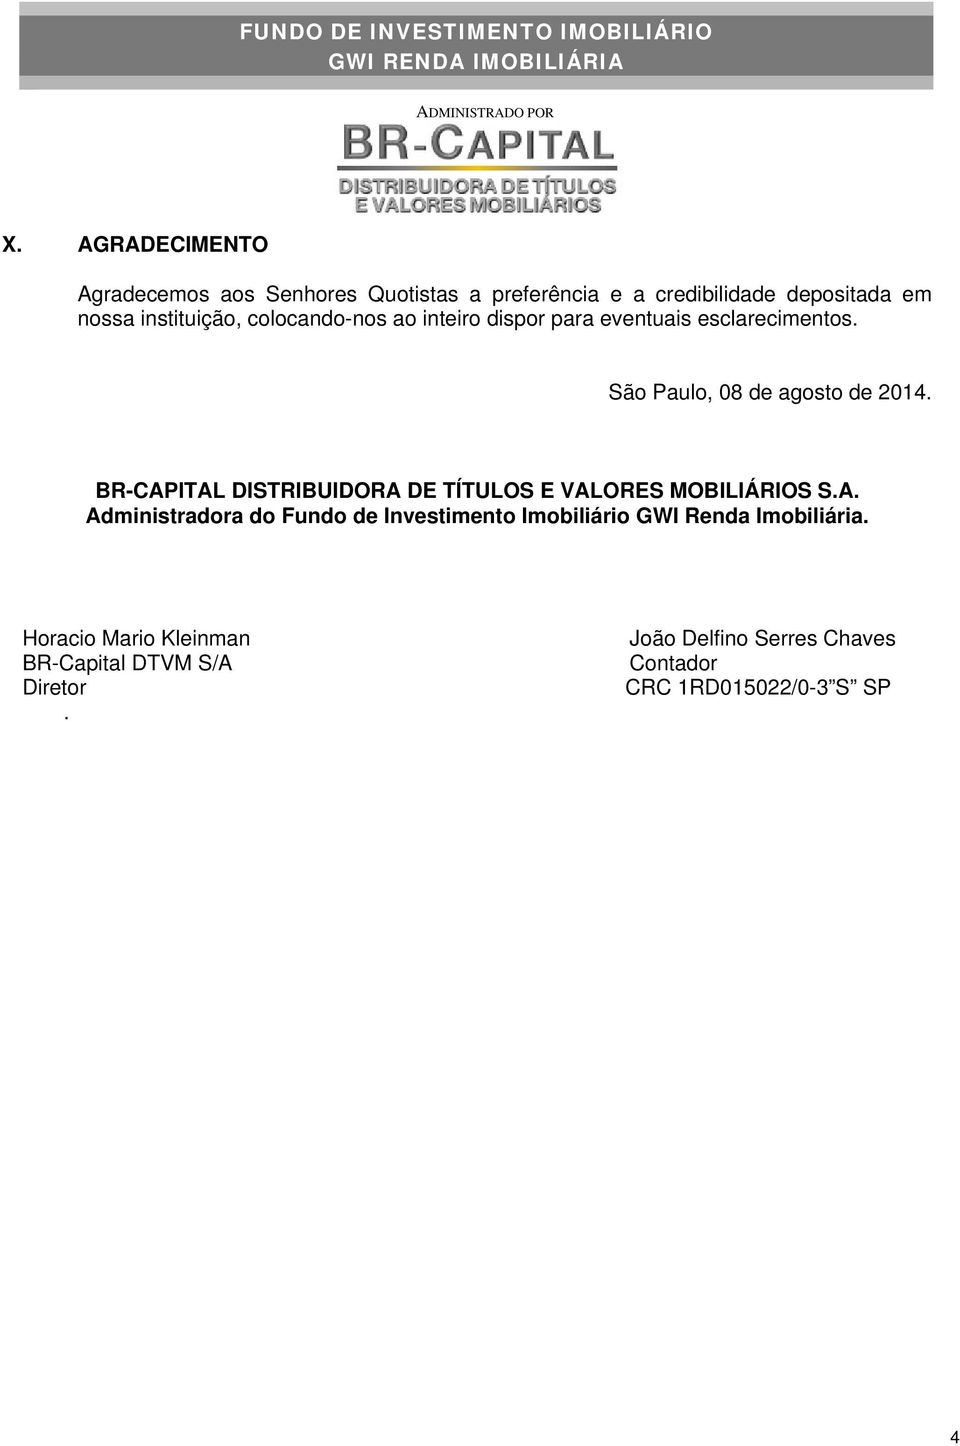 BR-CAPITAL DISTRIBUIDORA DE TÍTULOS E VALORES MOBILIÁRIOS S.A. Administradora do Fundo de Investimento Imobiliário GWI Renda Imobiliária.